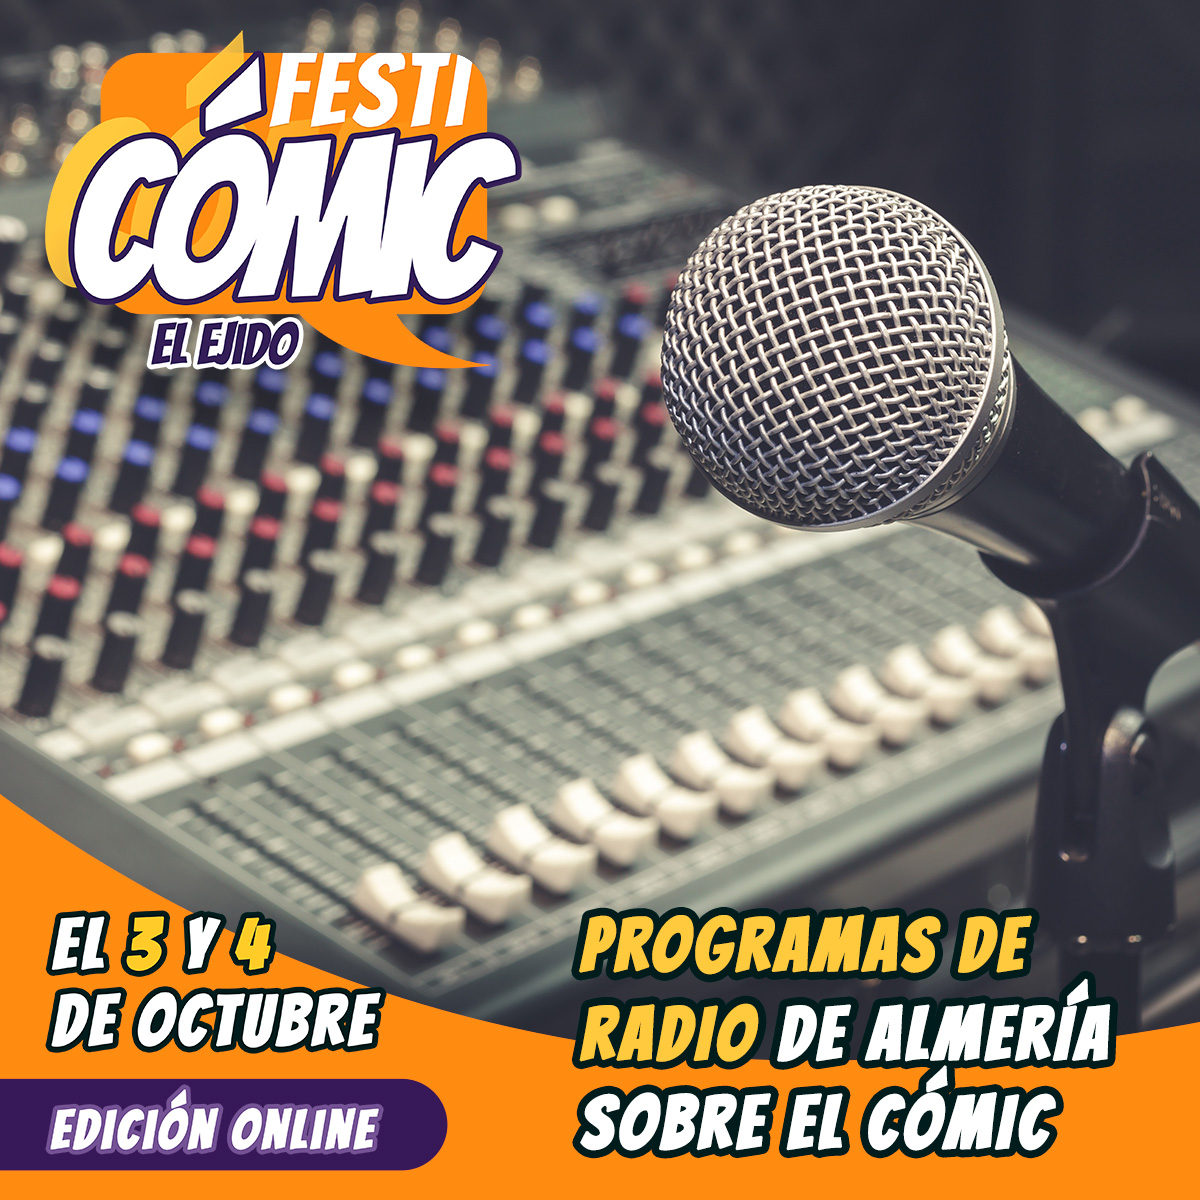 Programas de radio de Almería sobre el cómic - Festicómic 2020